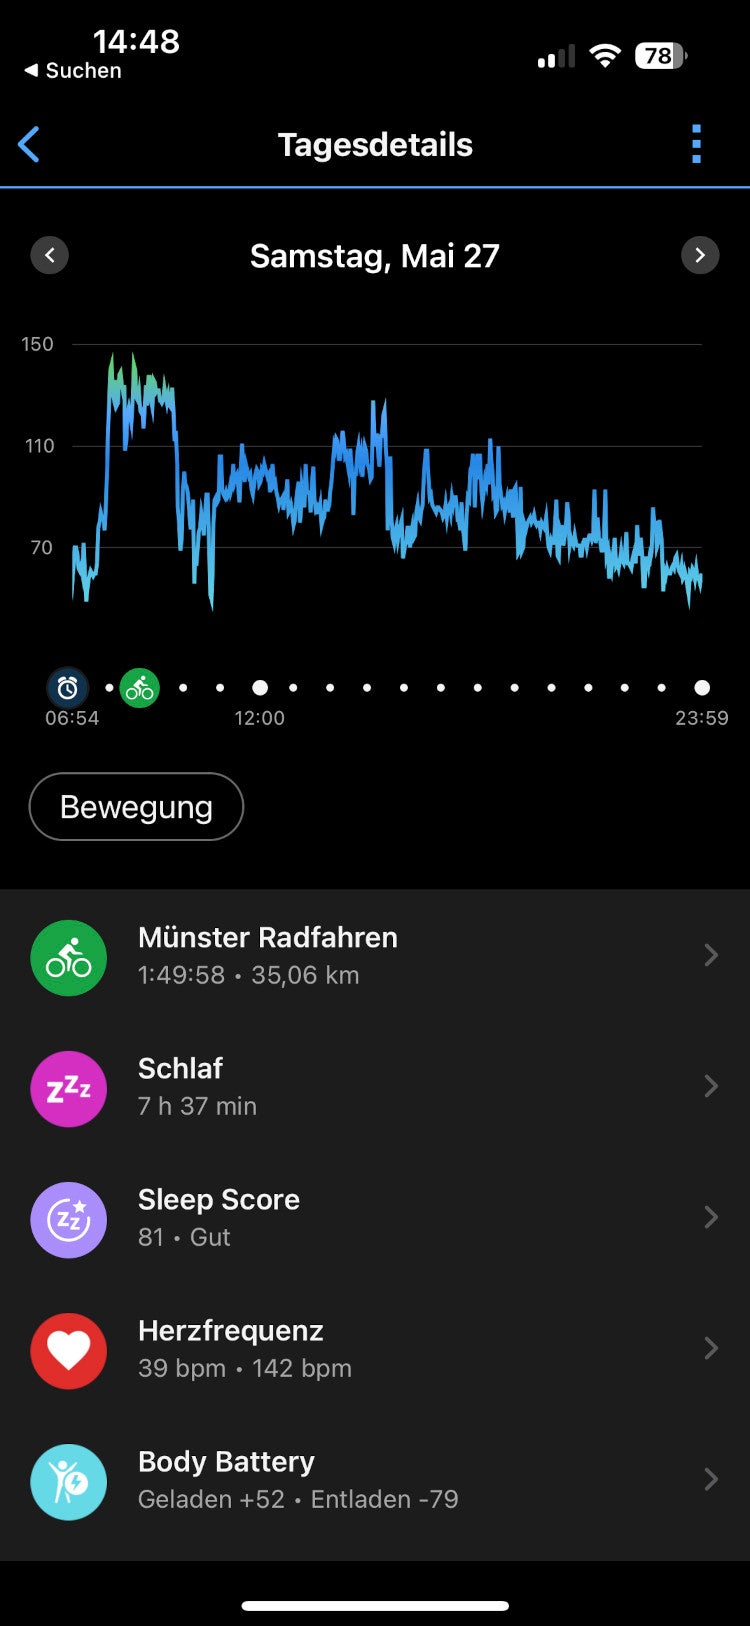 Detail-Ansicht zu Workout in der Garmin Connect App.